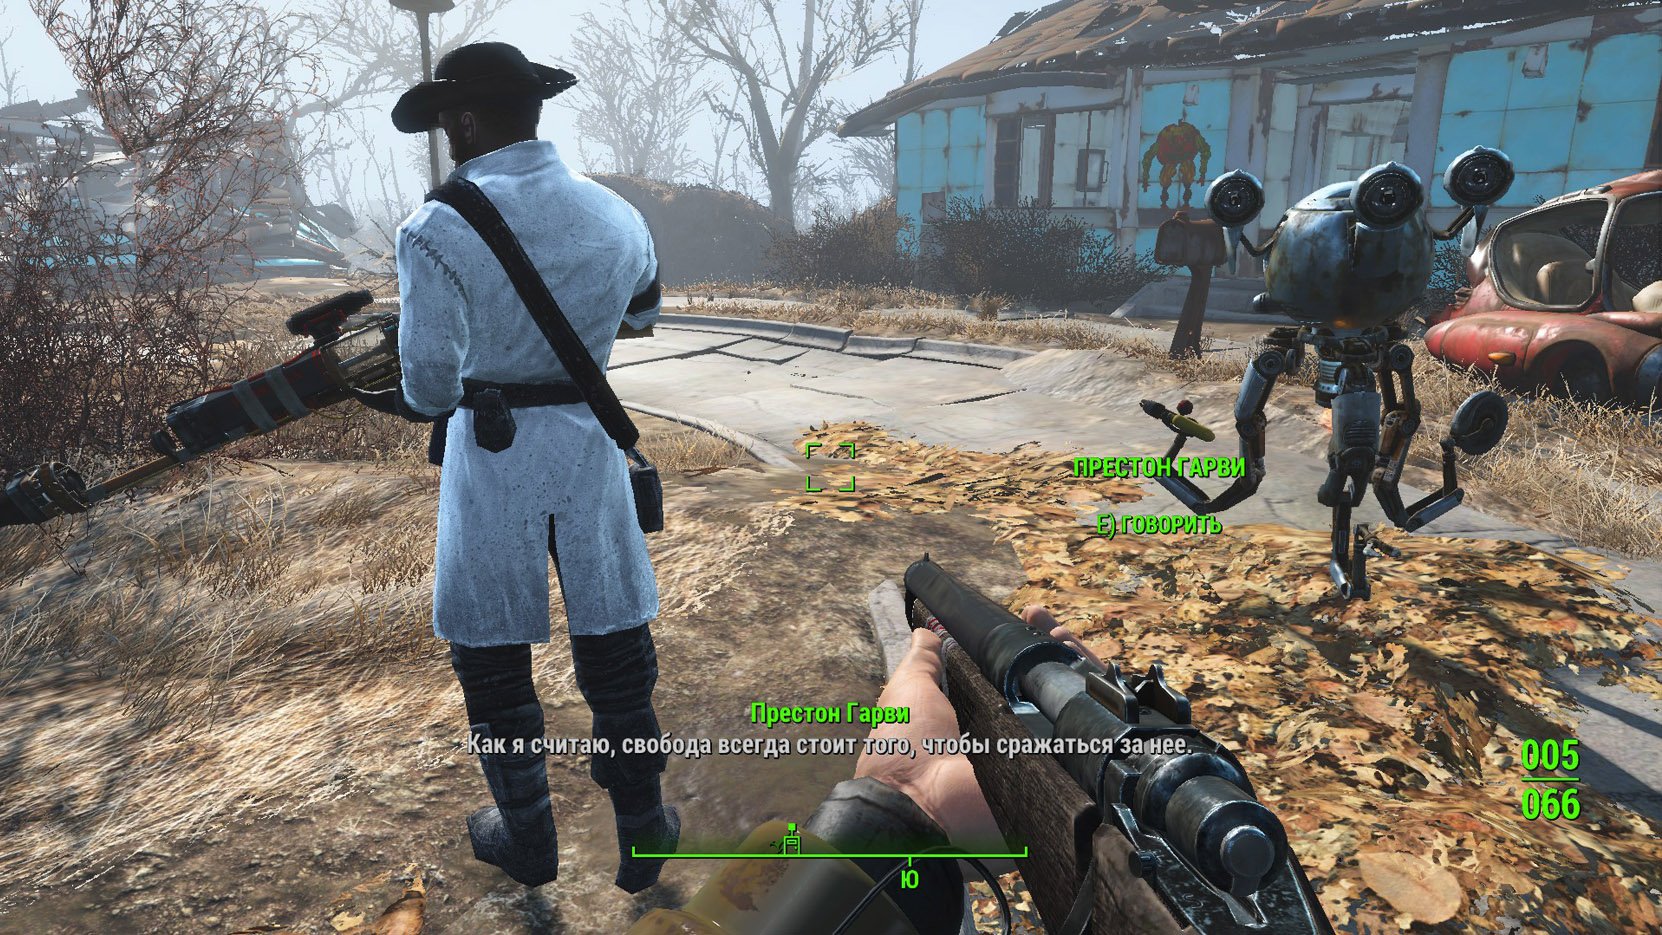 Fallout 4 не могу поговорить с престоном гарви фото 2